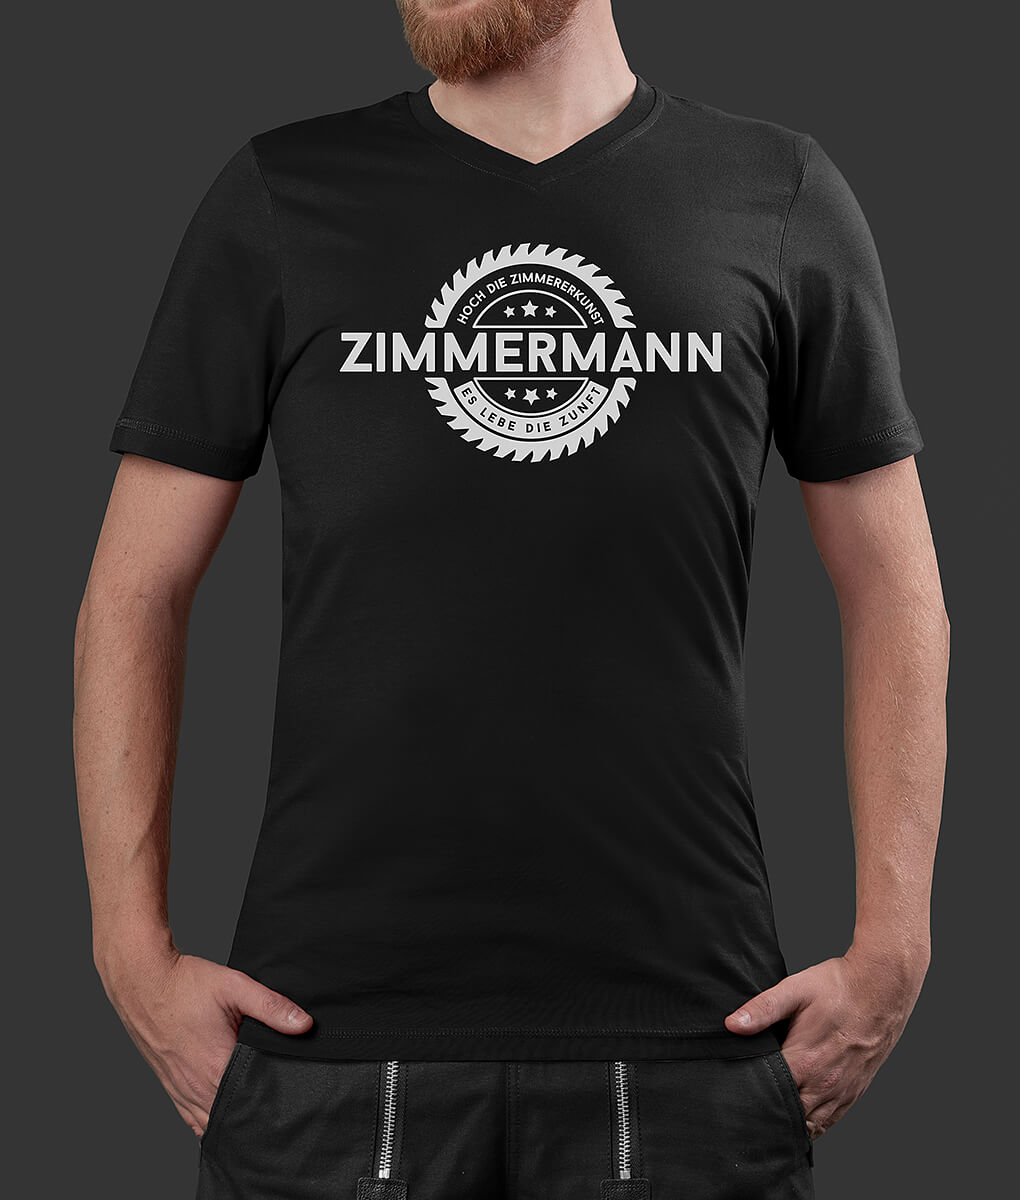 T-Shirt Philipp Säge Zimmermann Brust schwarz S